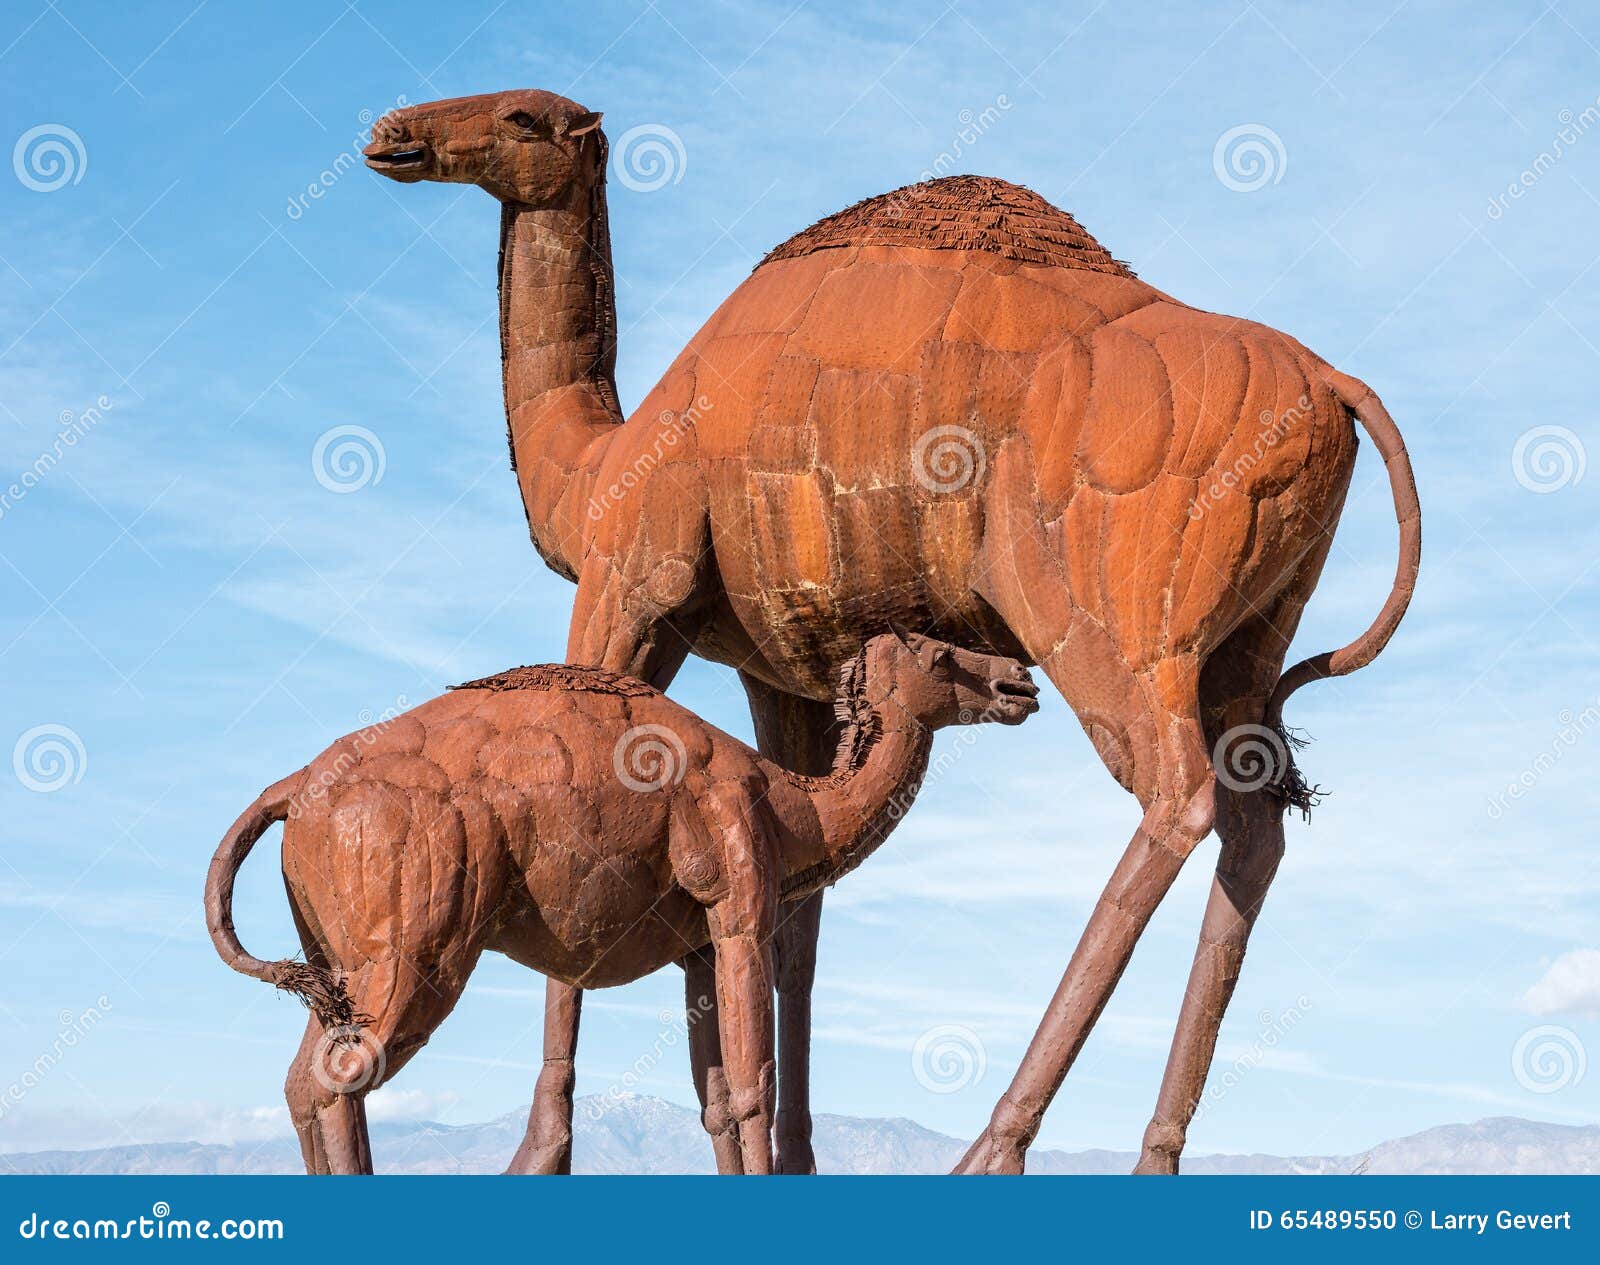 camel sculpture in galleta meadows